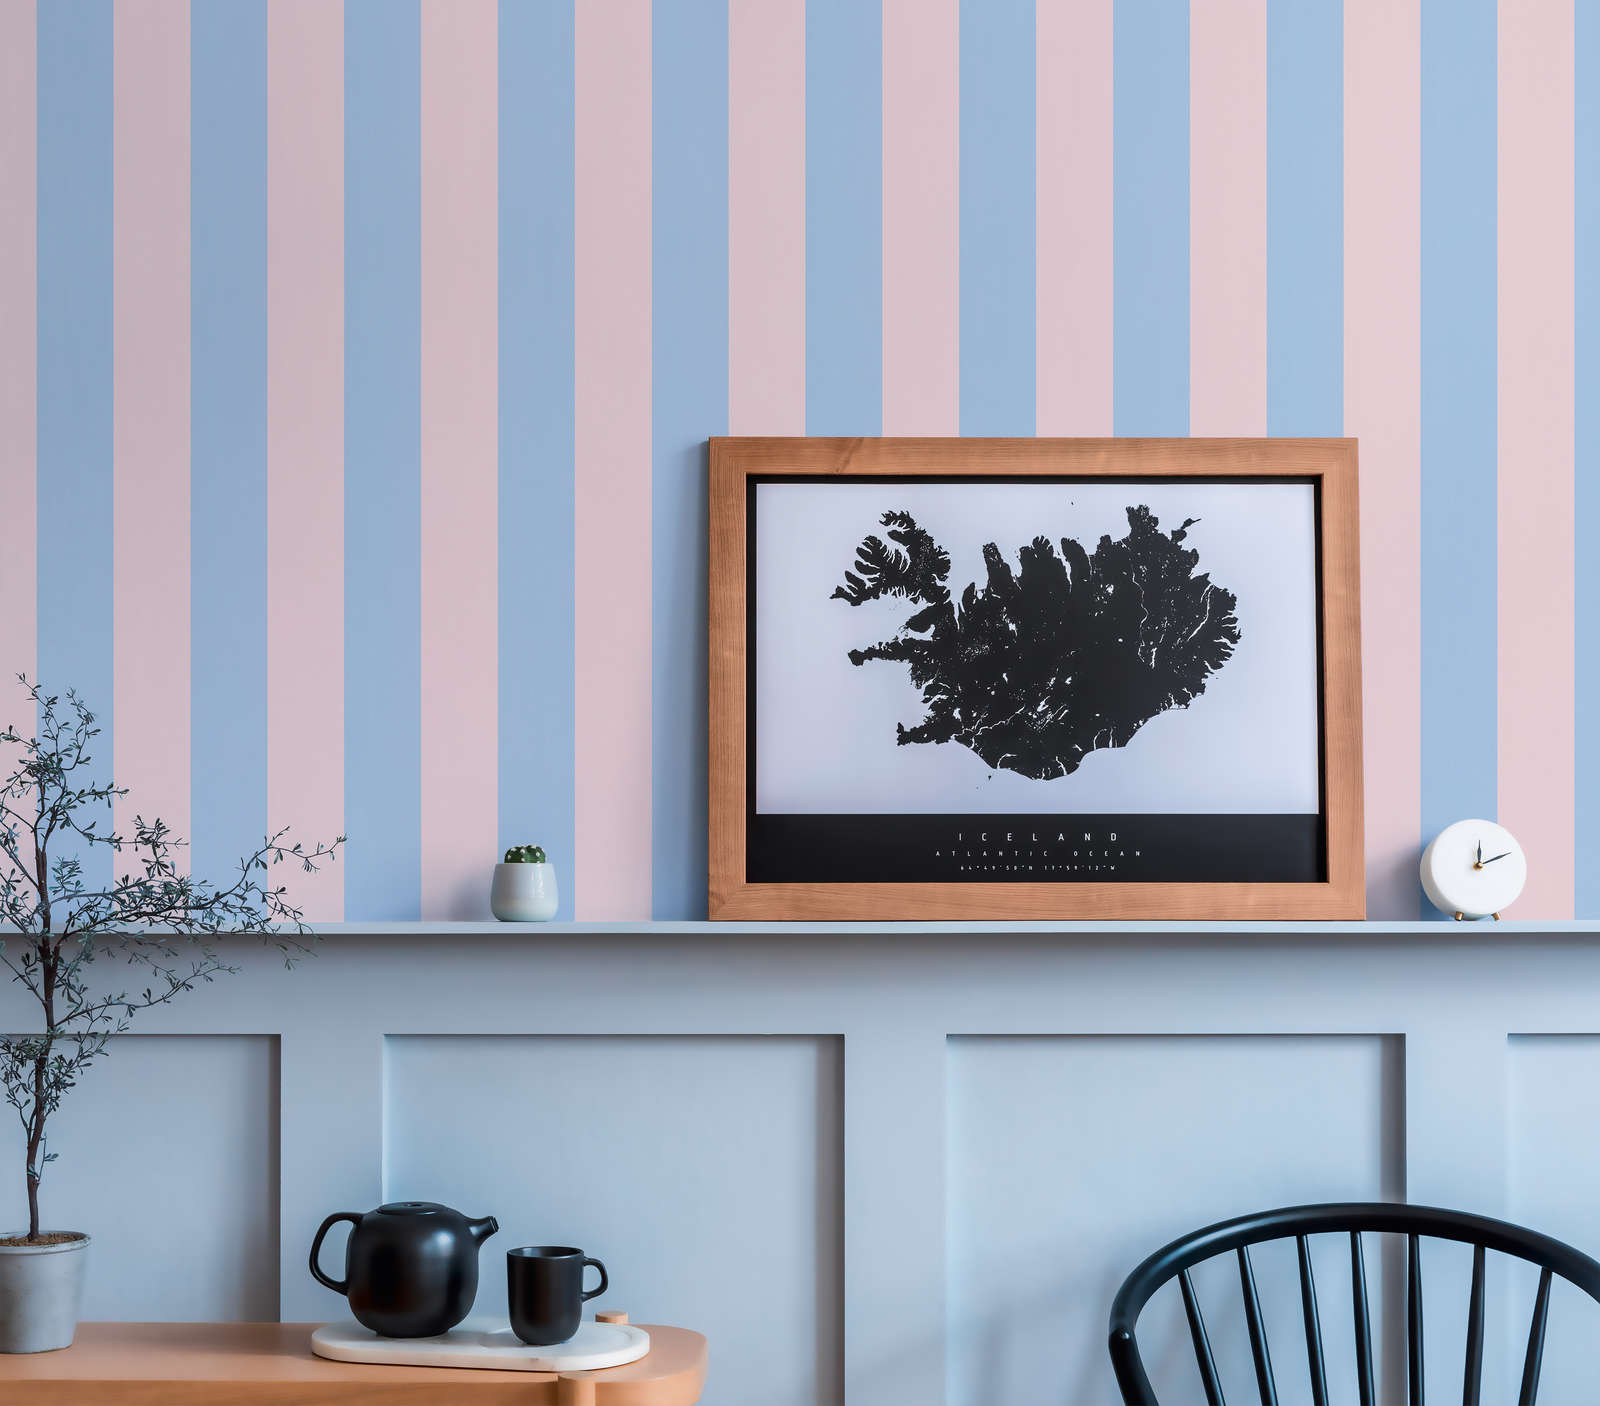             Gestreept behang met lichte structuur - blauw, roze
        